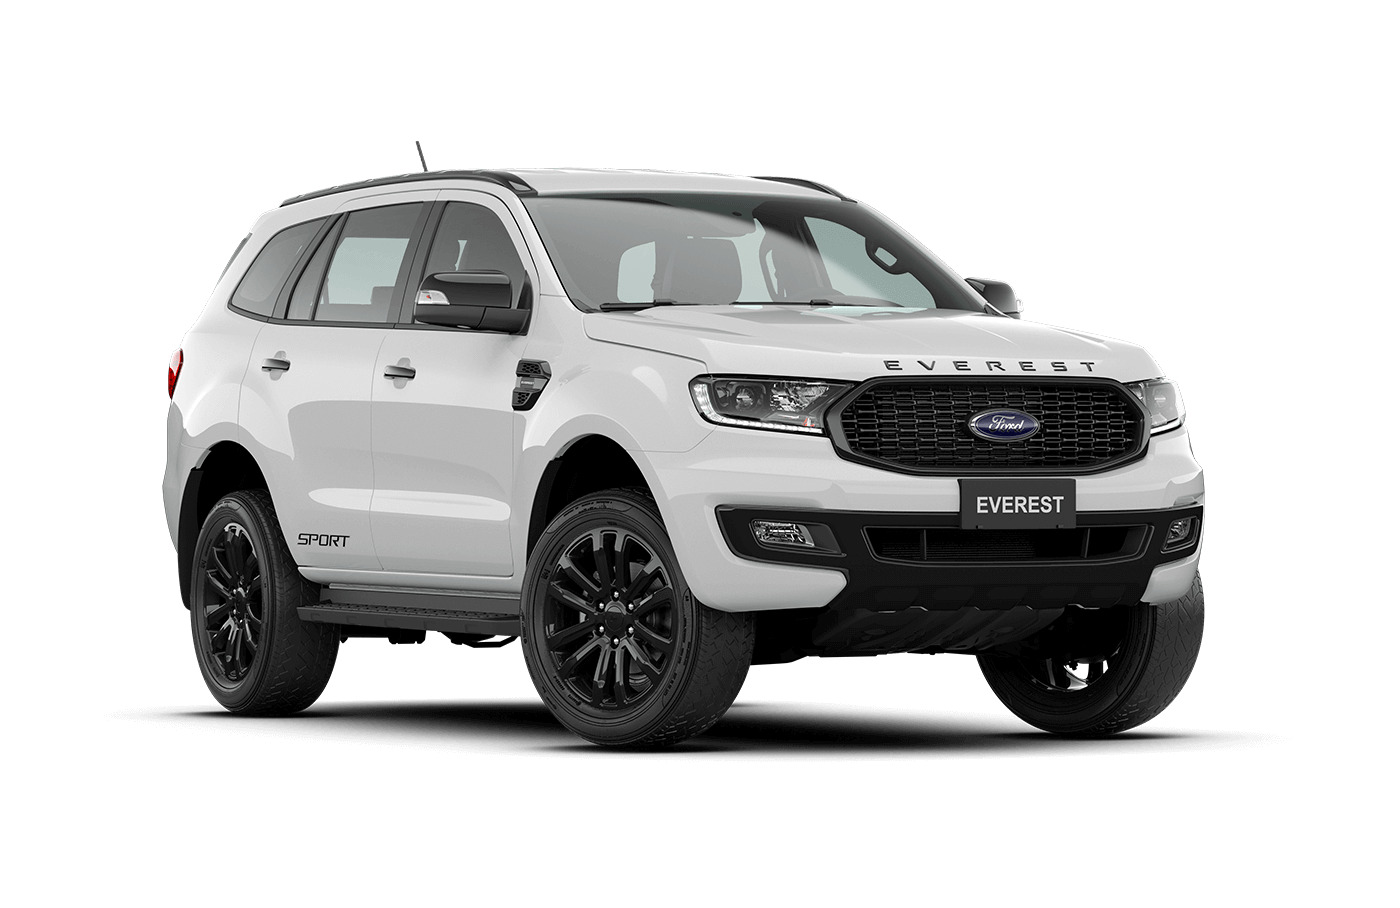 SUV đa năng: Hé lộ các phiên bản và ưu điểm của Ford Everest thế hệ mới tại Ford Bình Triệu